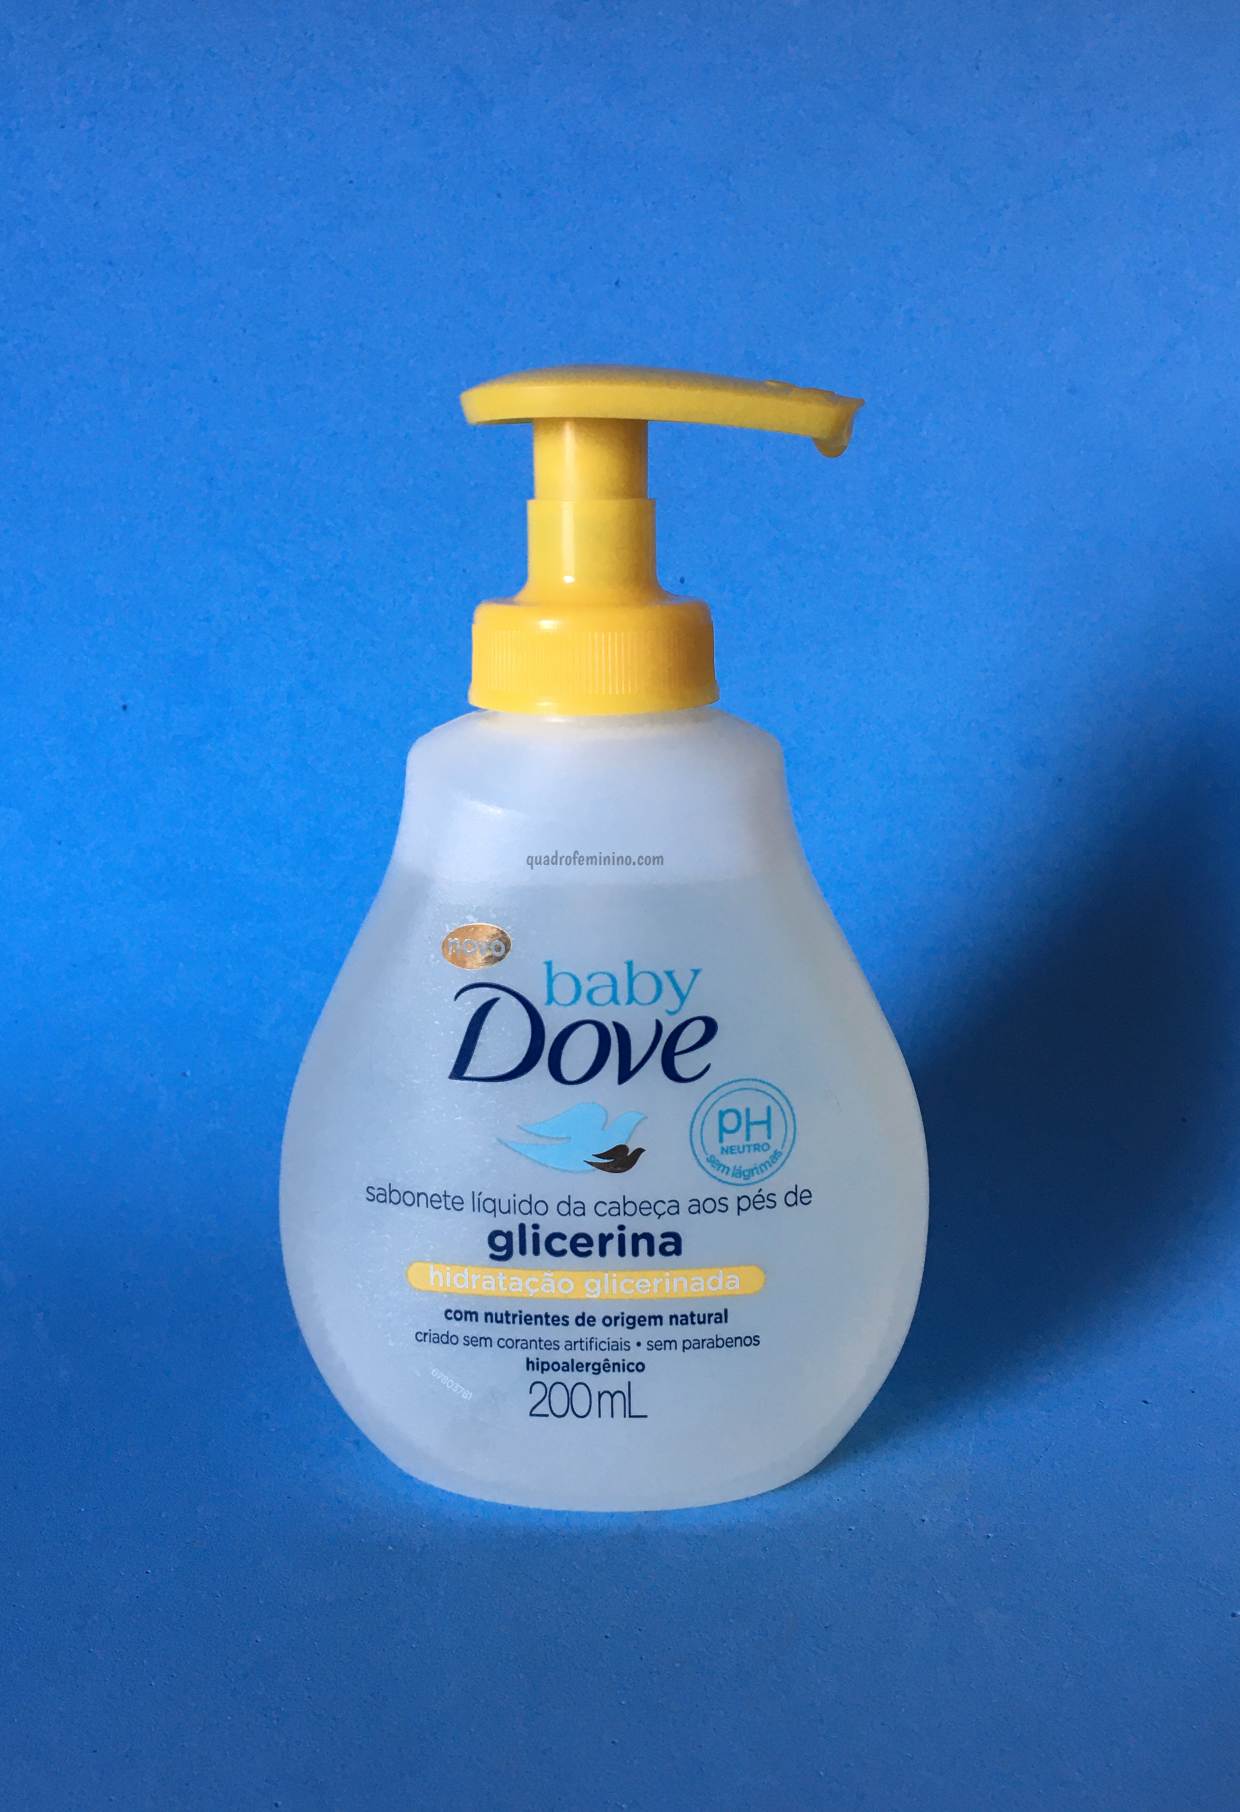 Baby Dovecom Liquid Glycerin Soap